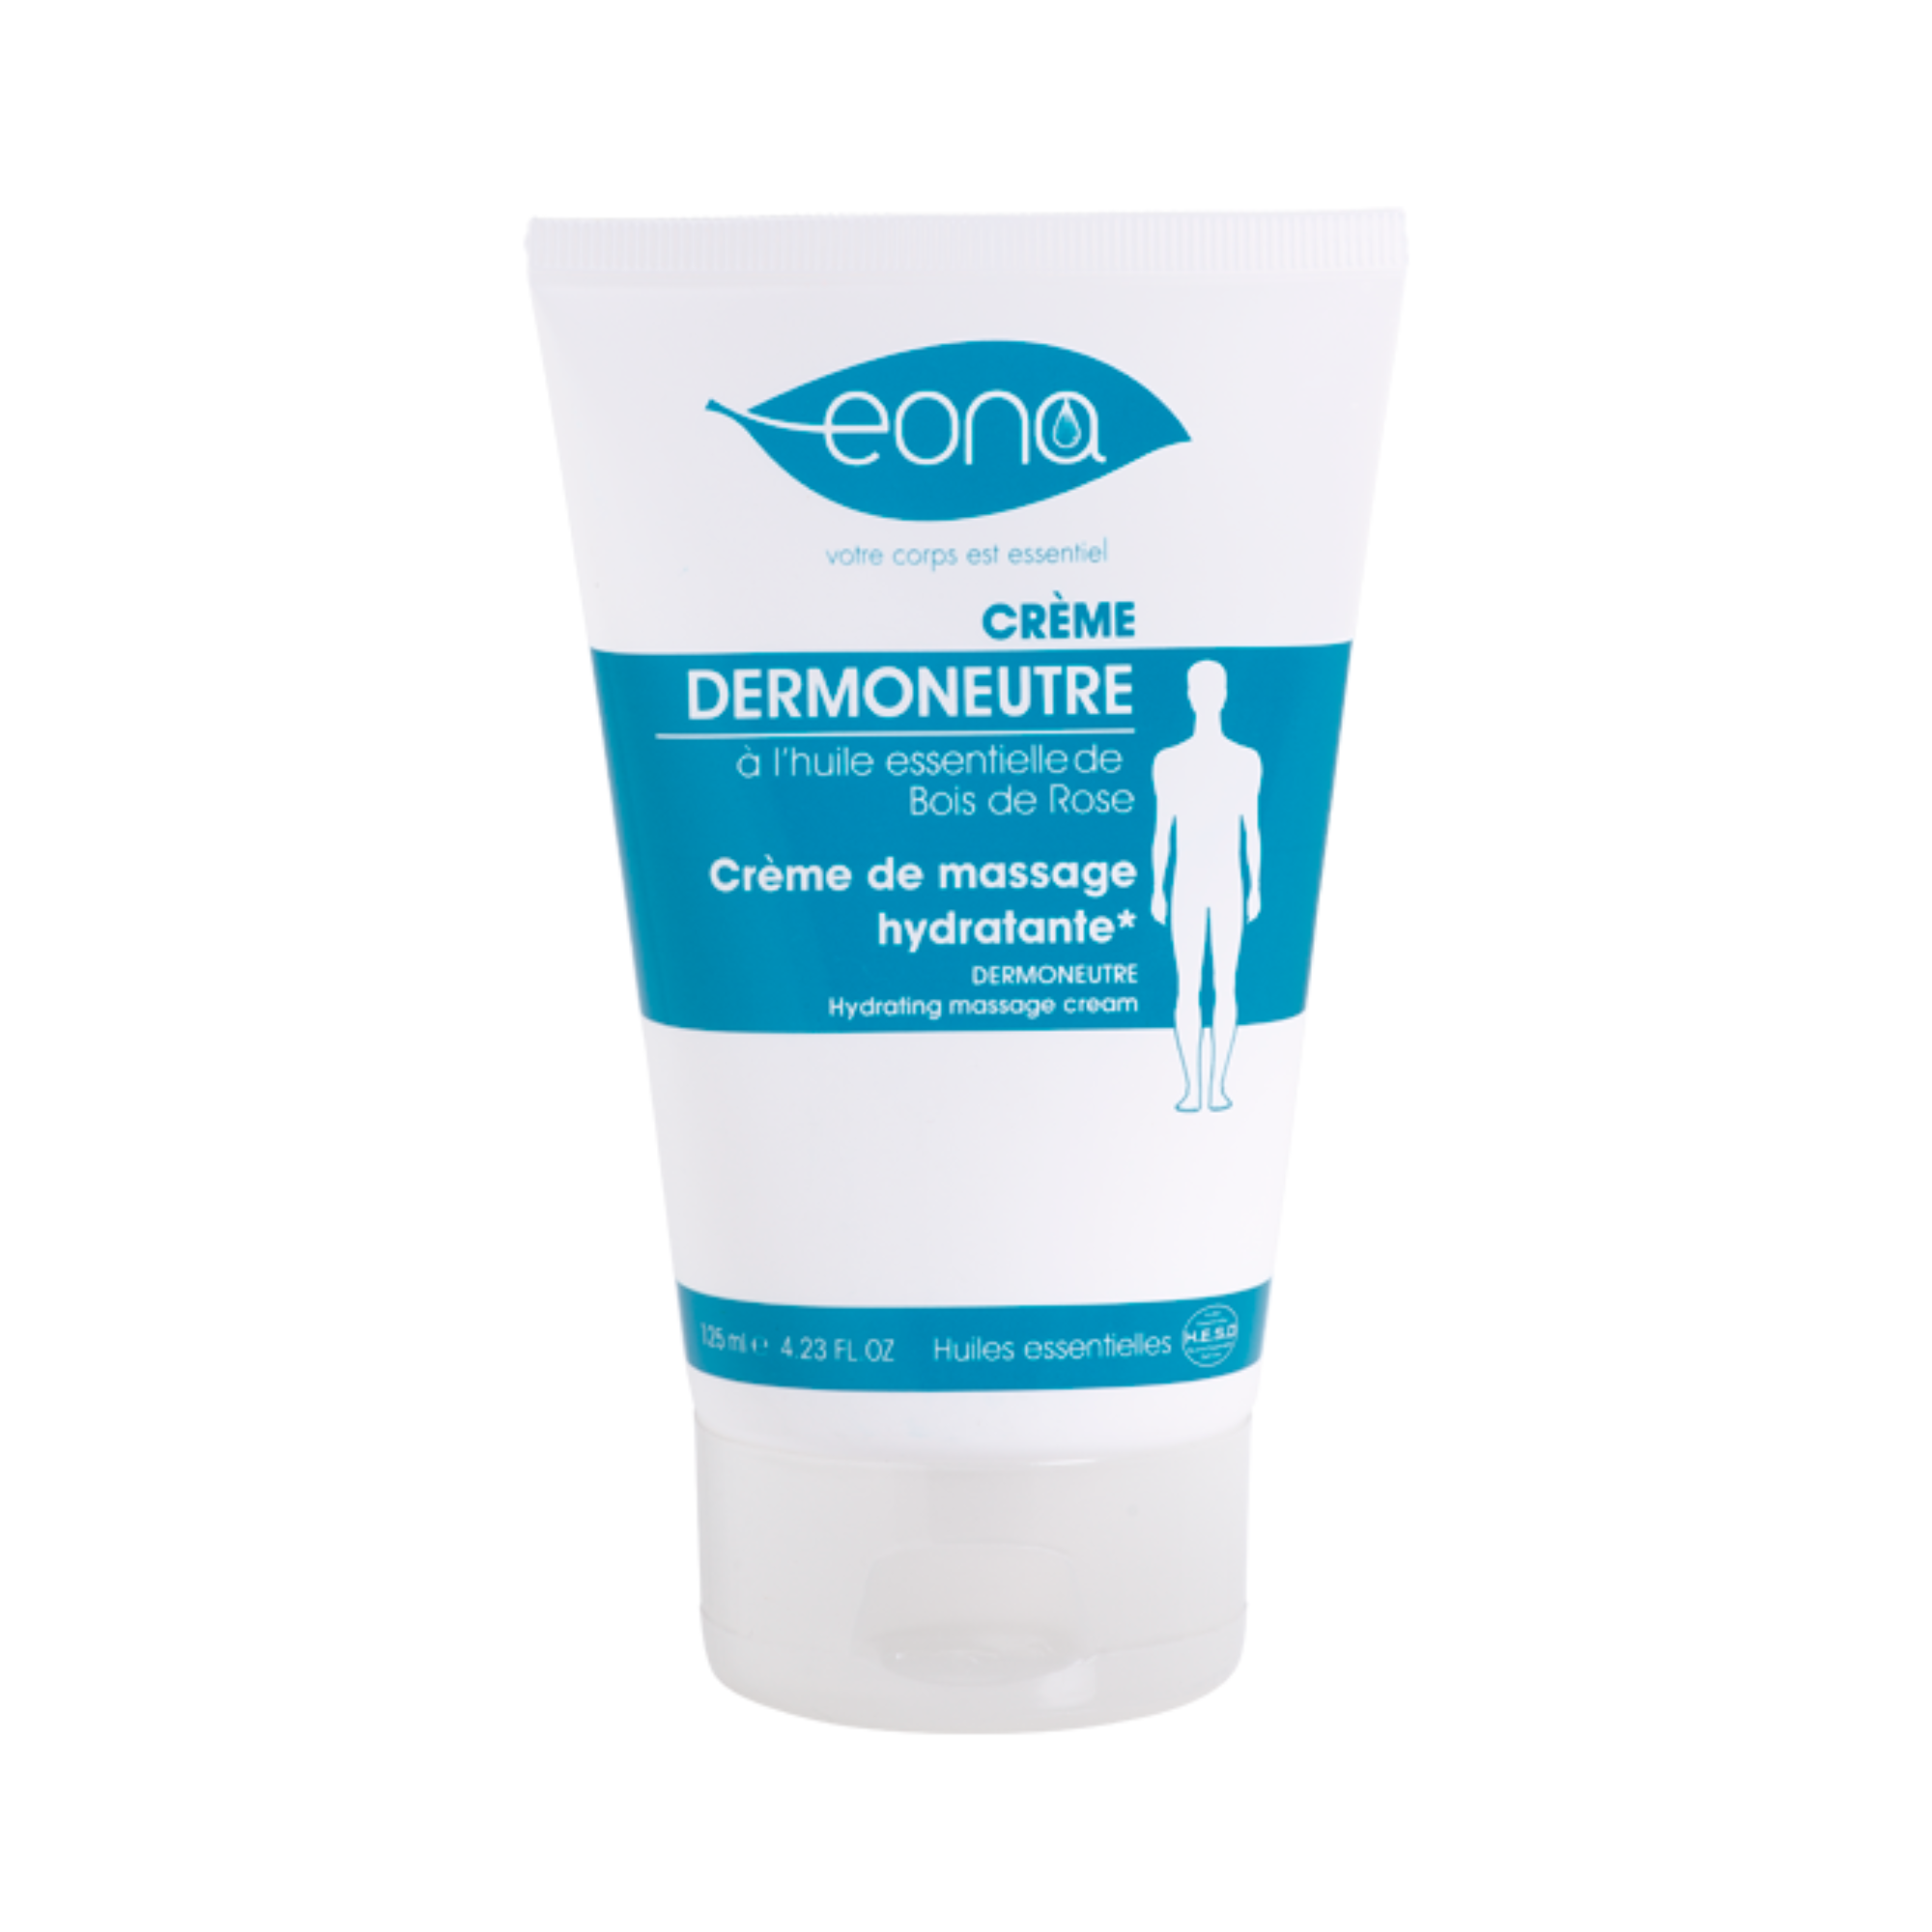 Crème de massage hydratante* Dermoneutre - Eona